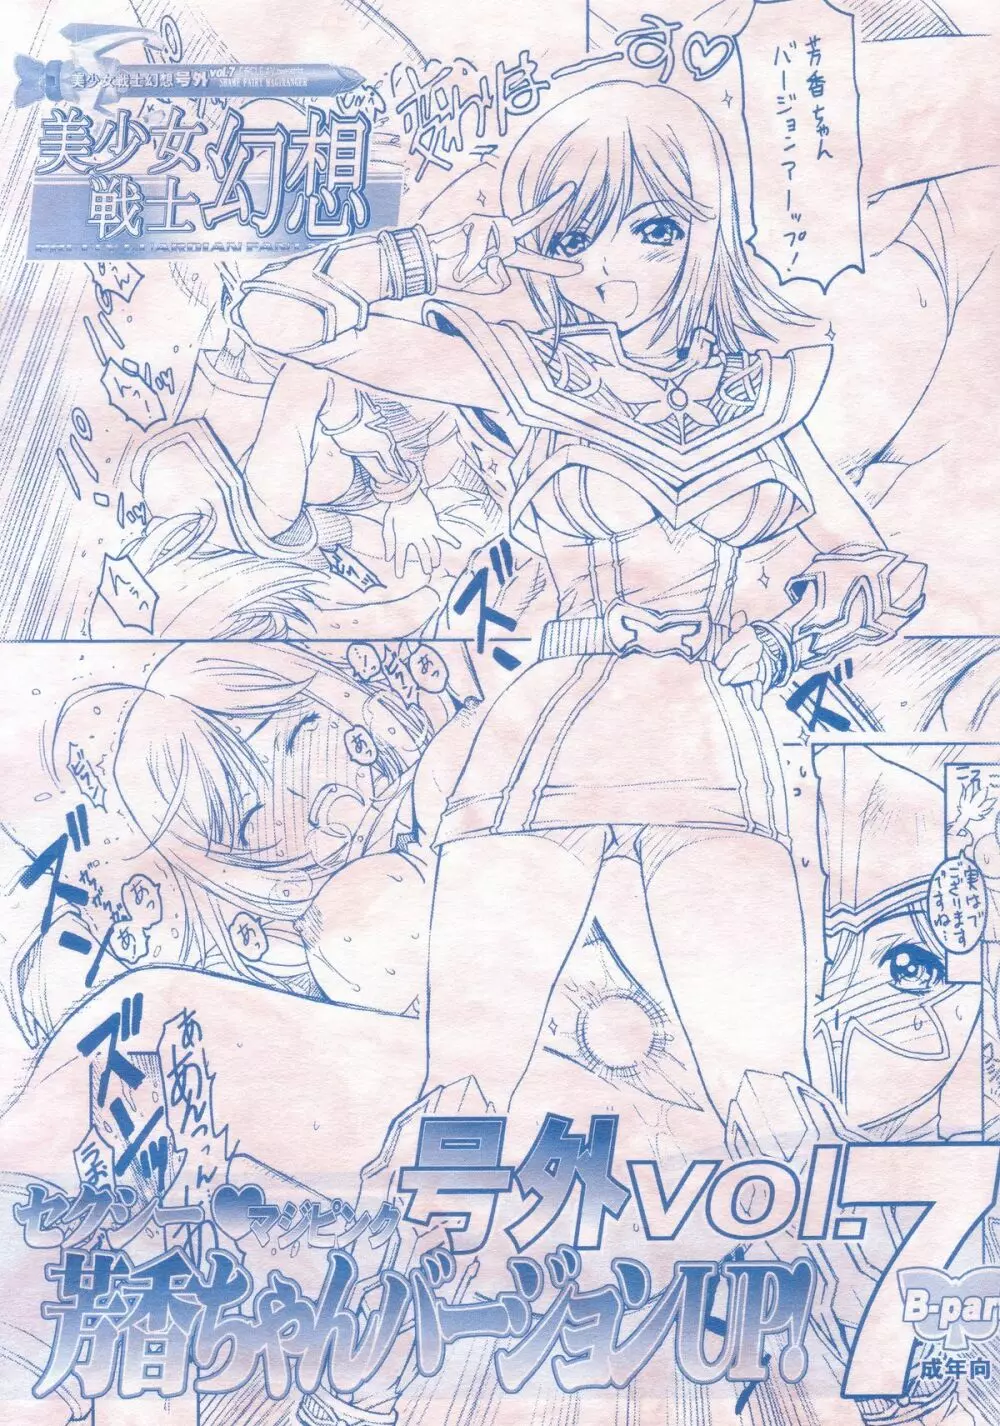 美少女戦士幻想 号外vol.7 Bパート